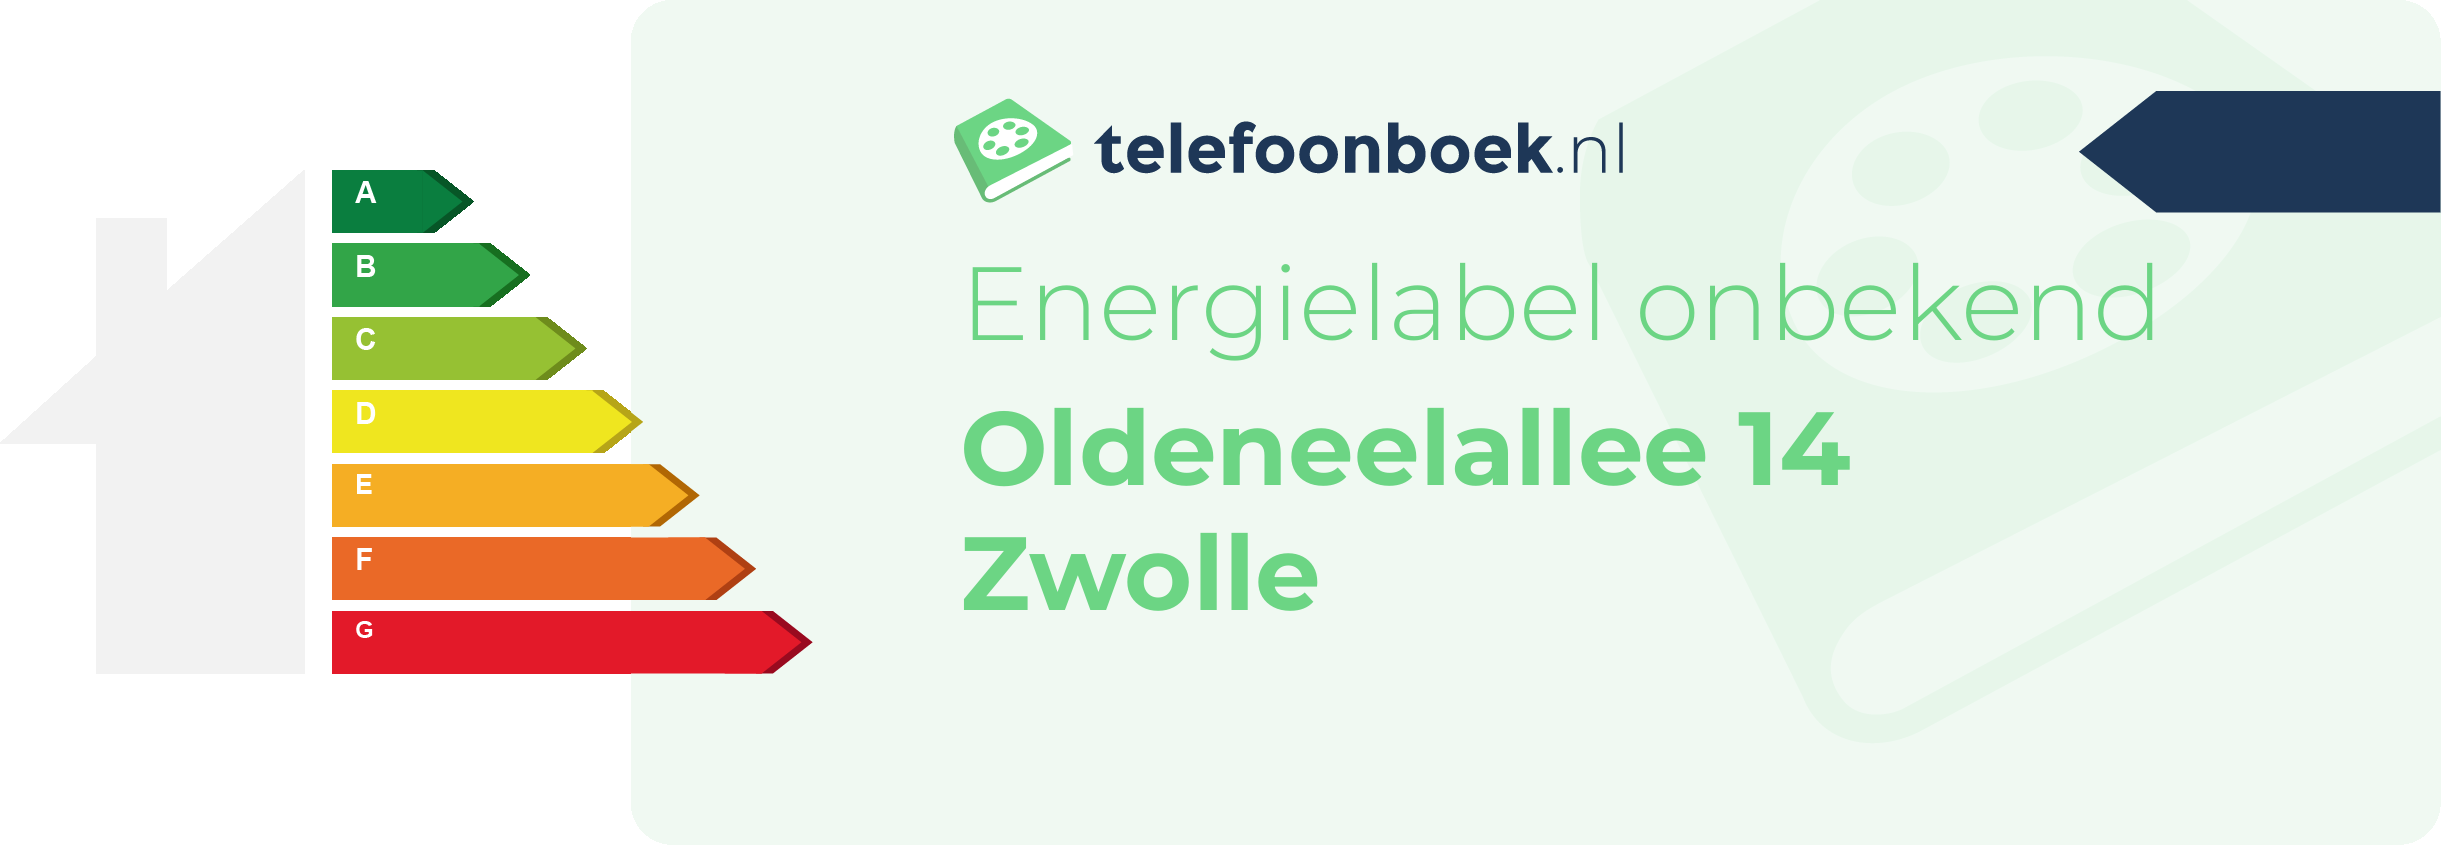 Energielabel Oldeneelallee 14 Zwolle